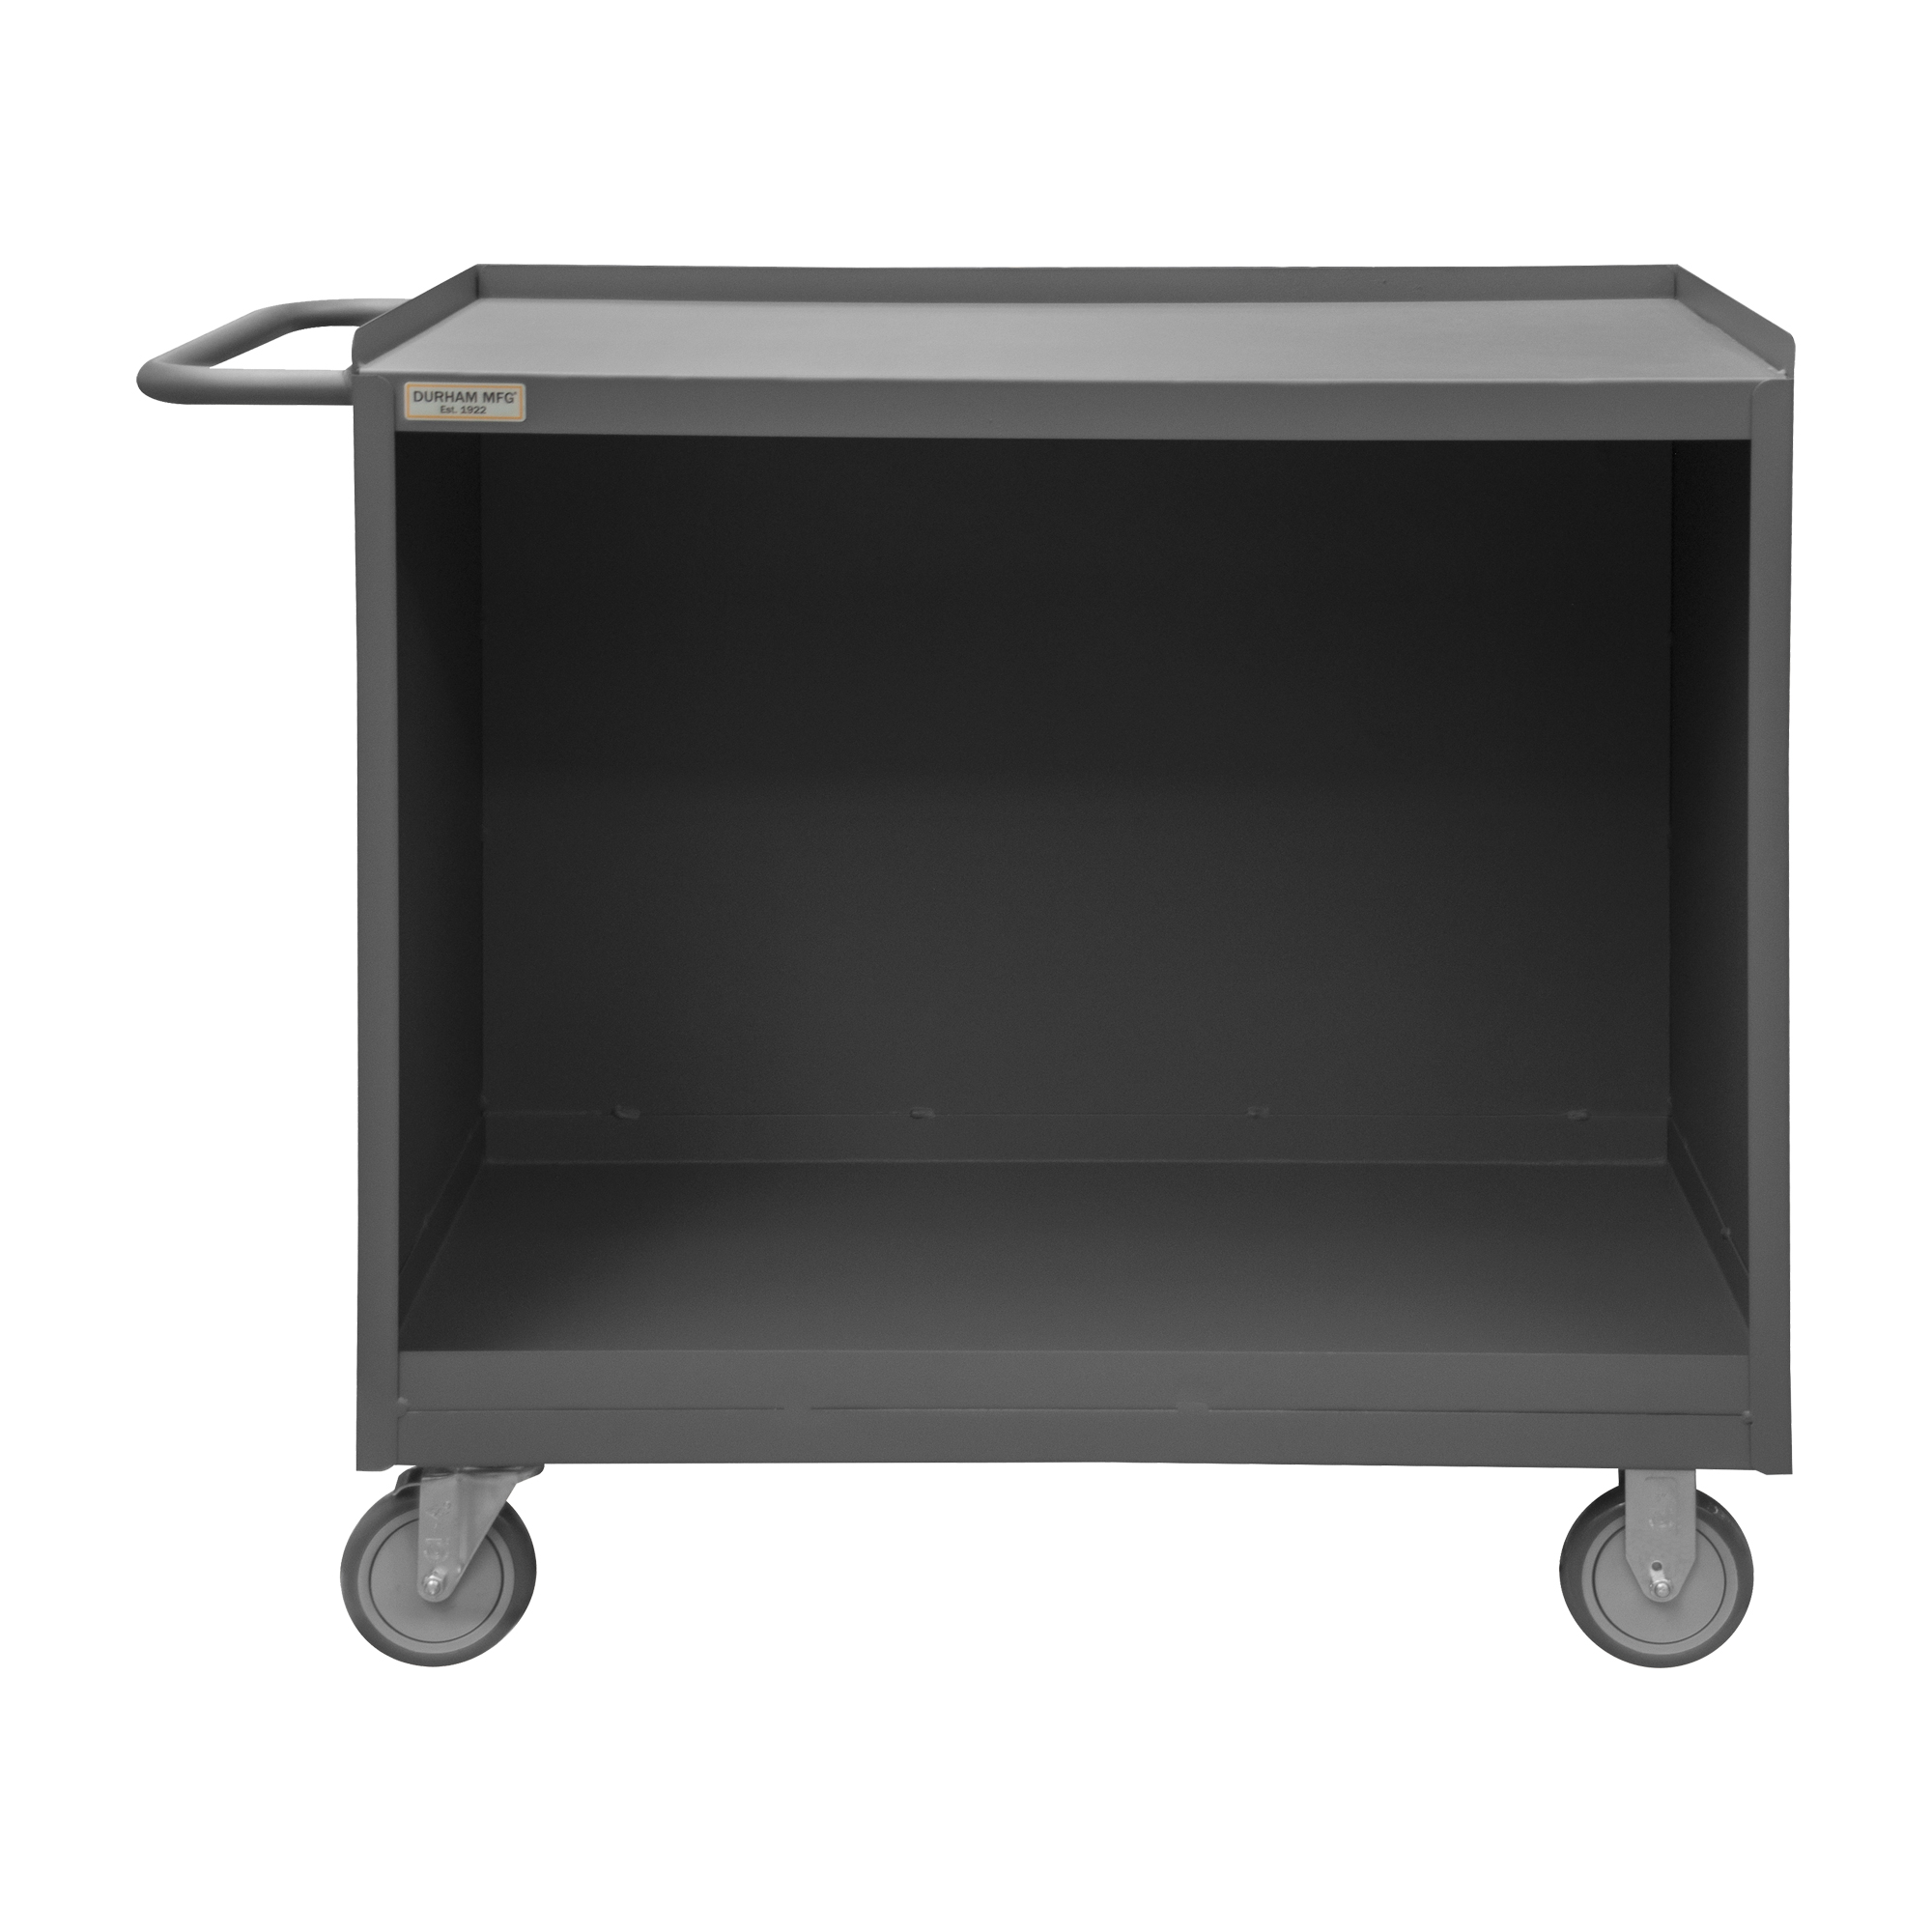 Mobile Bench Cabinet, Steel Top, No Door, Size 24-1/4 x 42-1/8 x 36-3/8 Inch